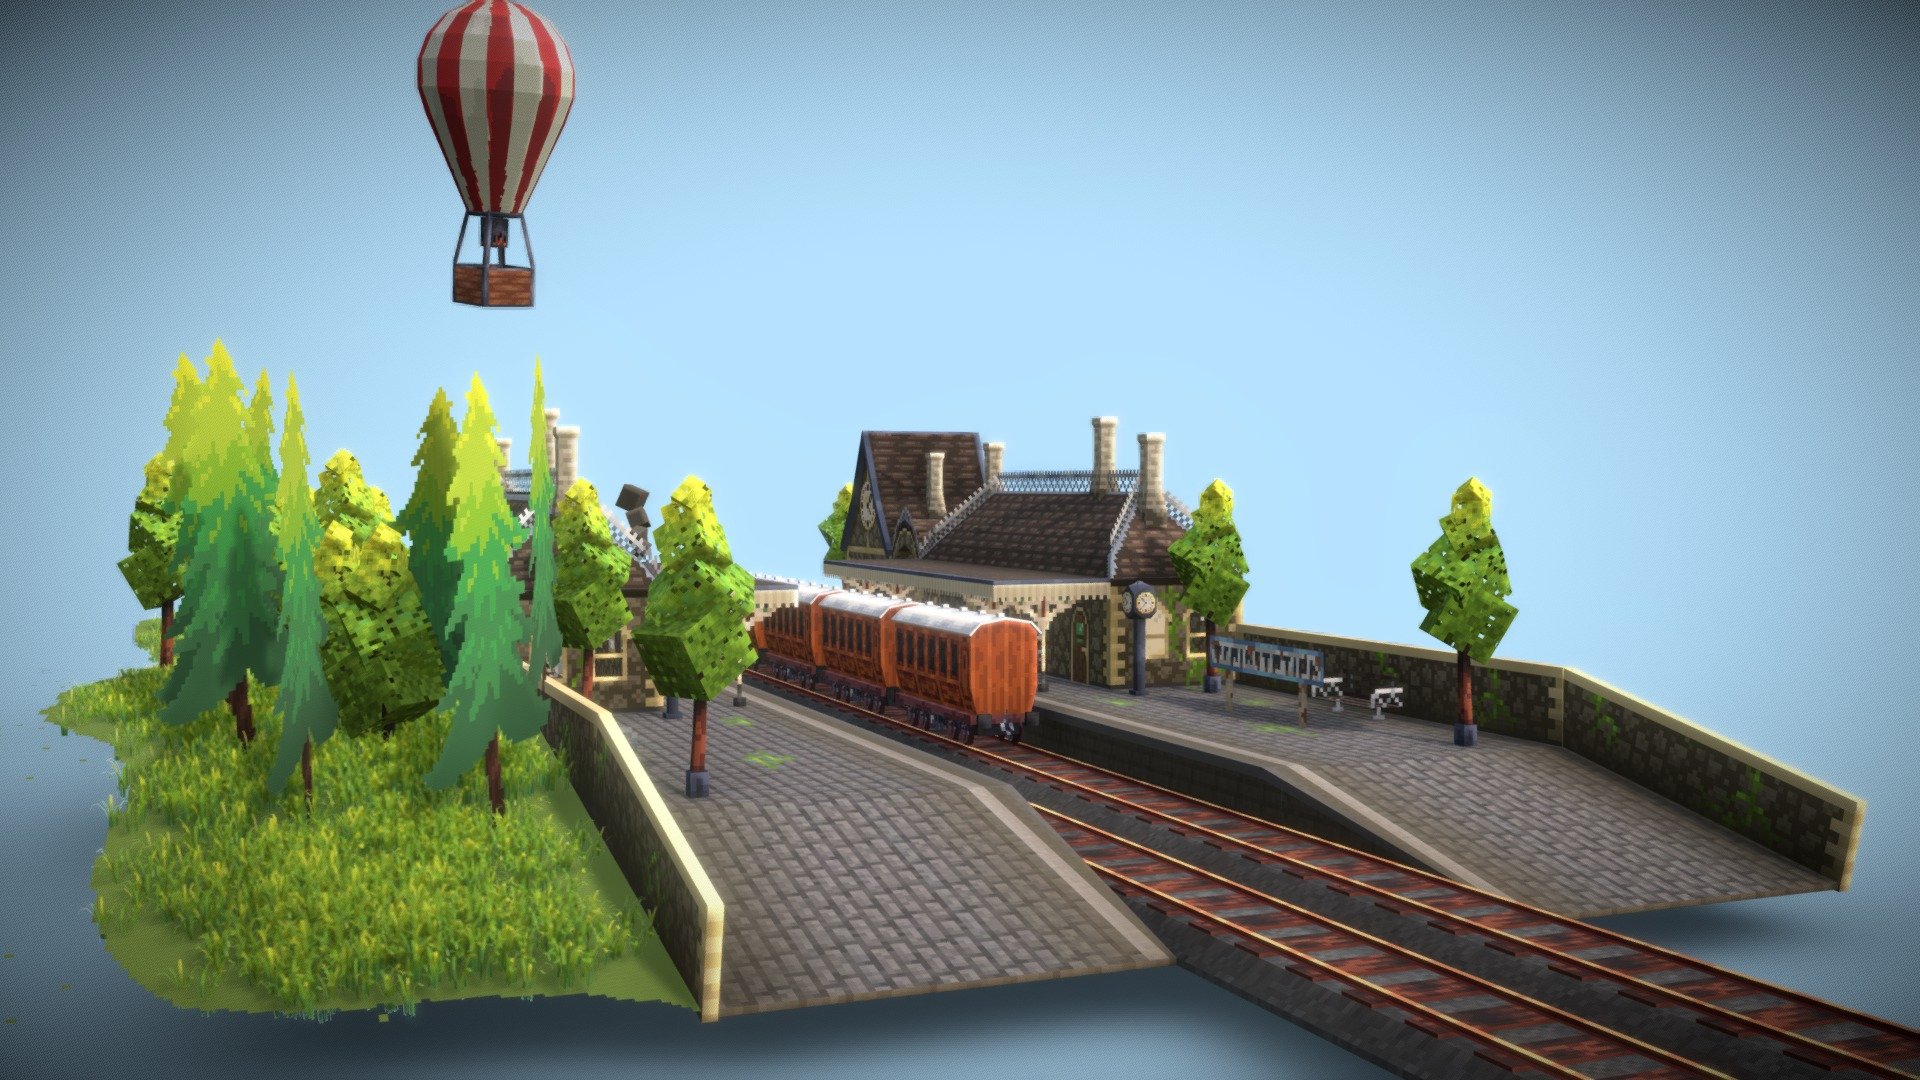 victorian/steampunk train station - 3D model by halbear.gamez 3d model